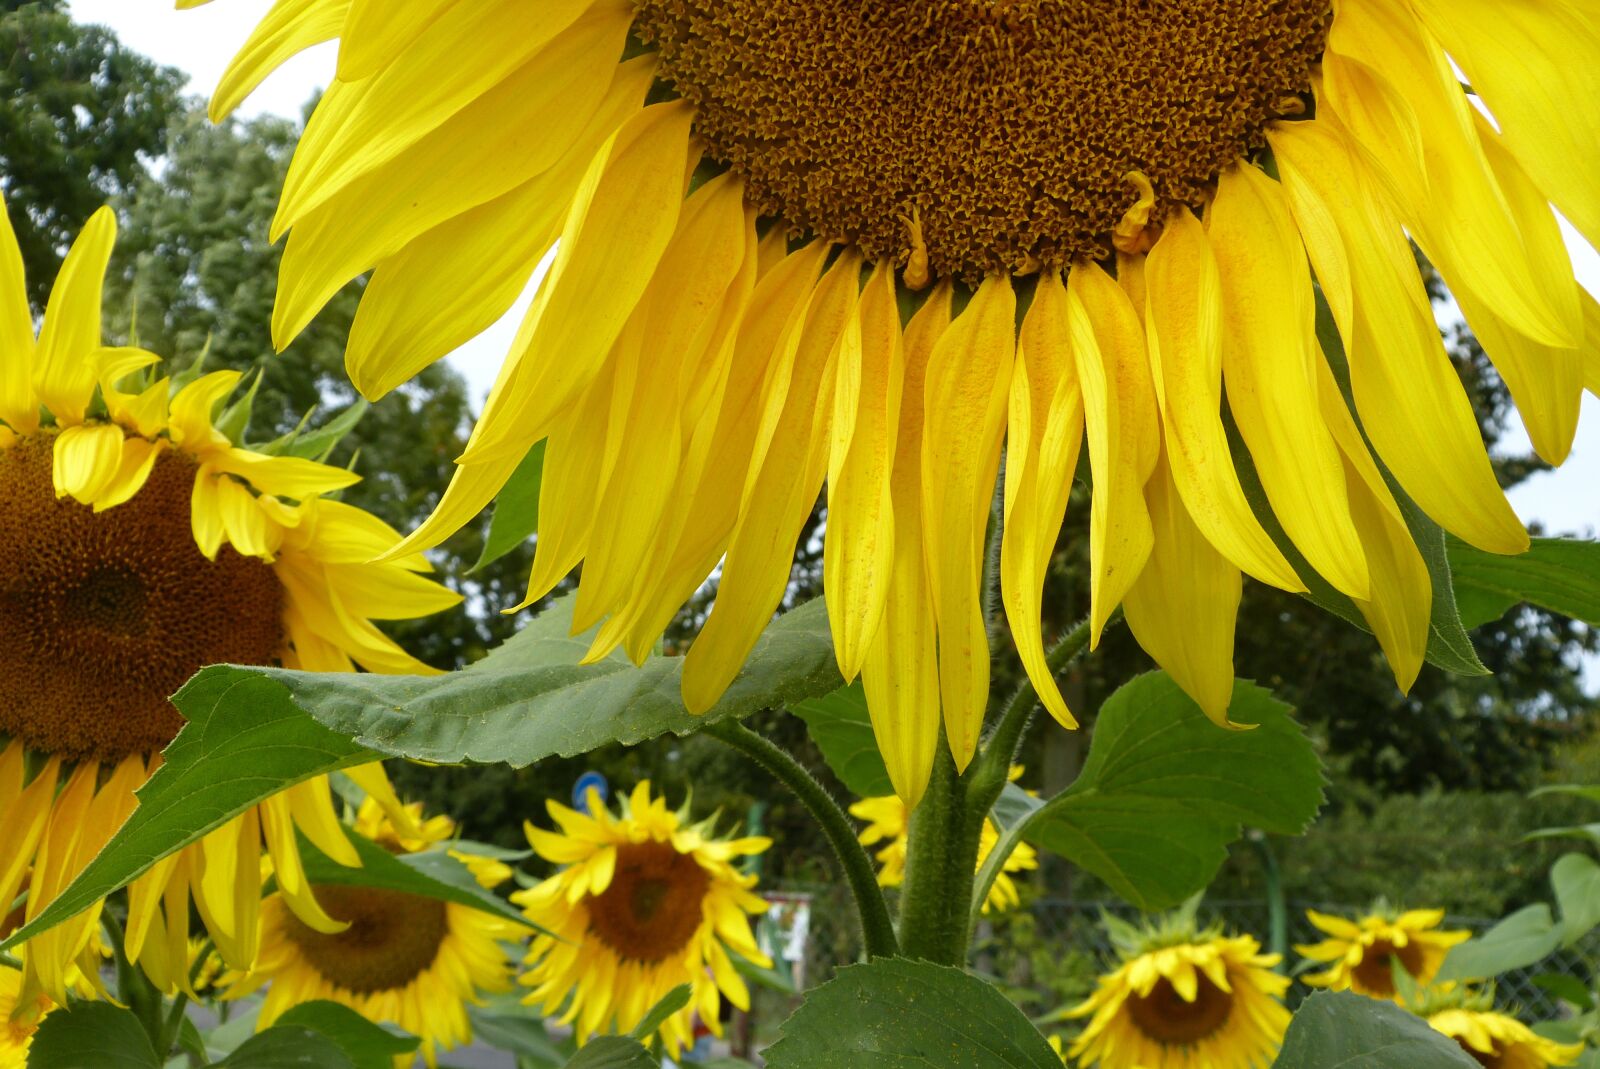 Panasonic Lumix DMC-FZ150 sample photo. Summer, sunflower, yellow photography